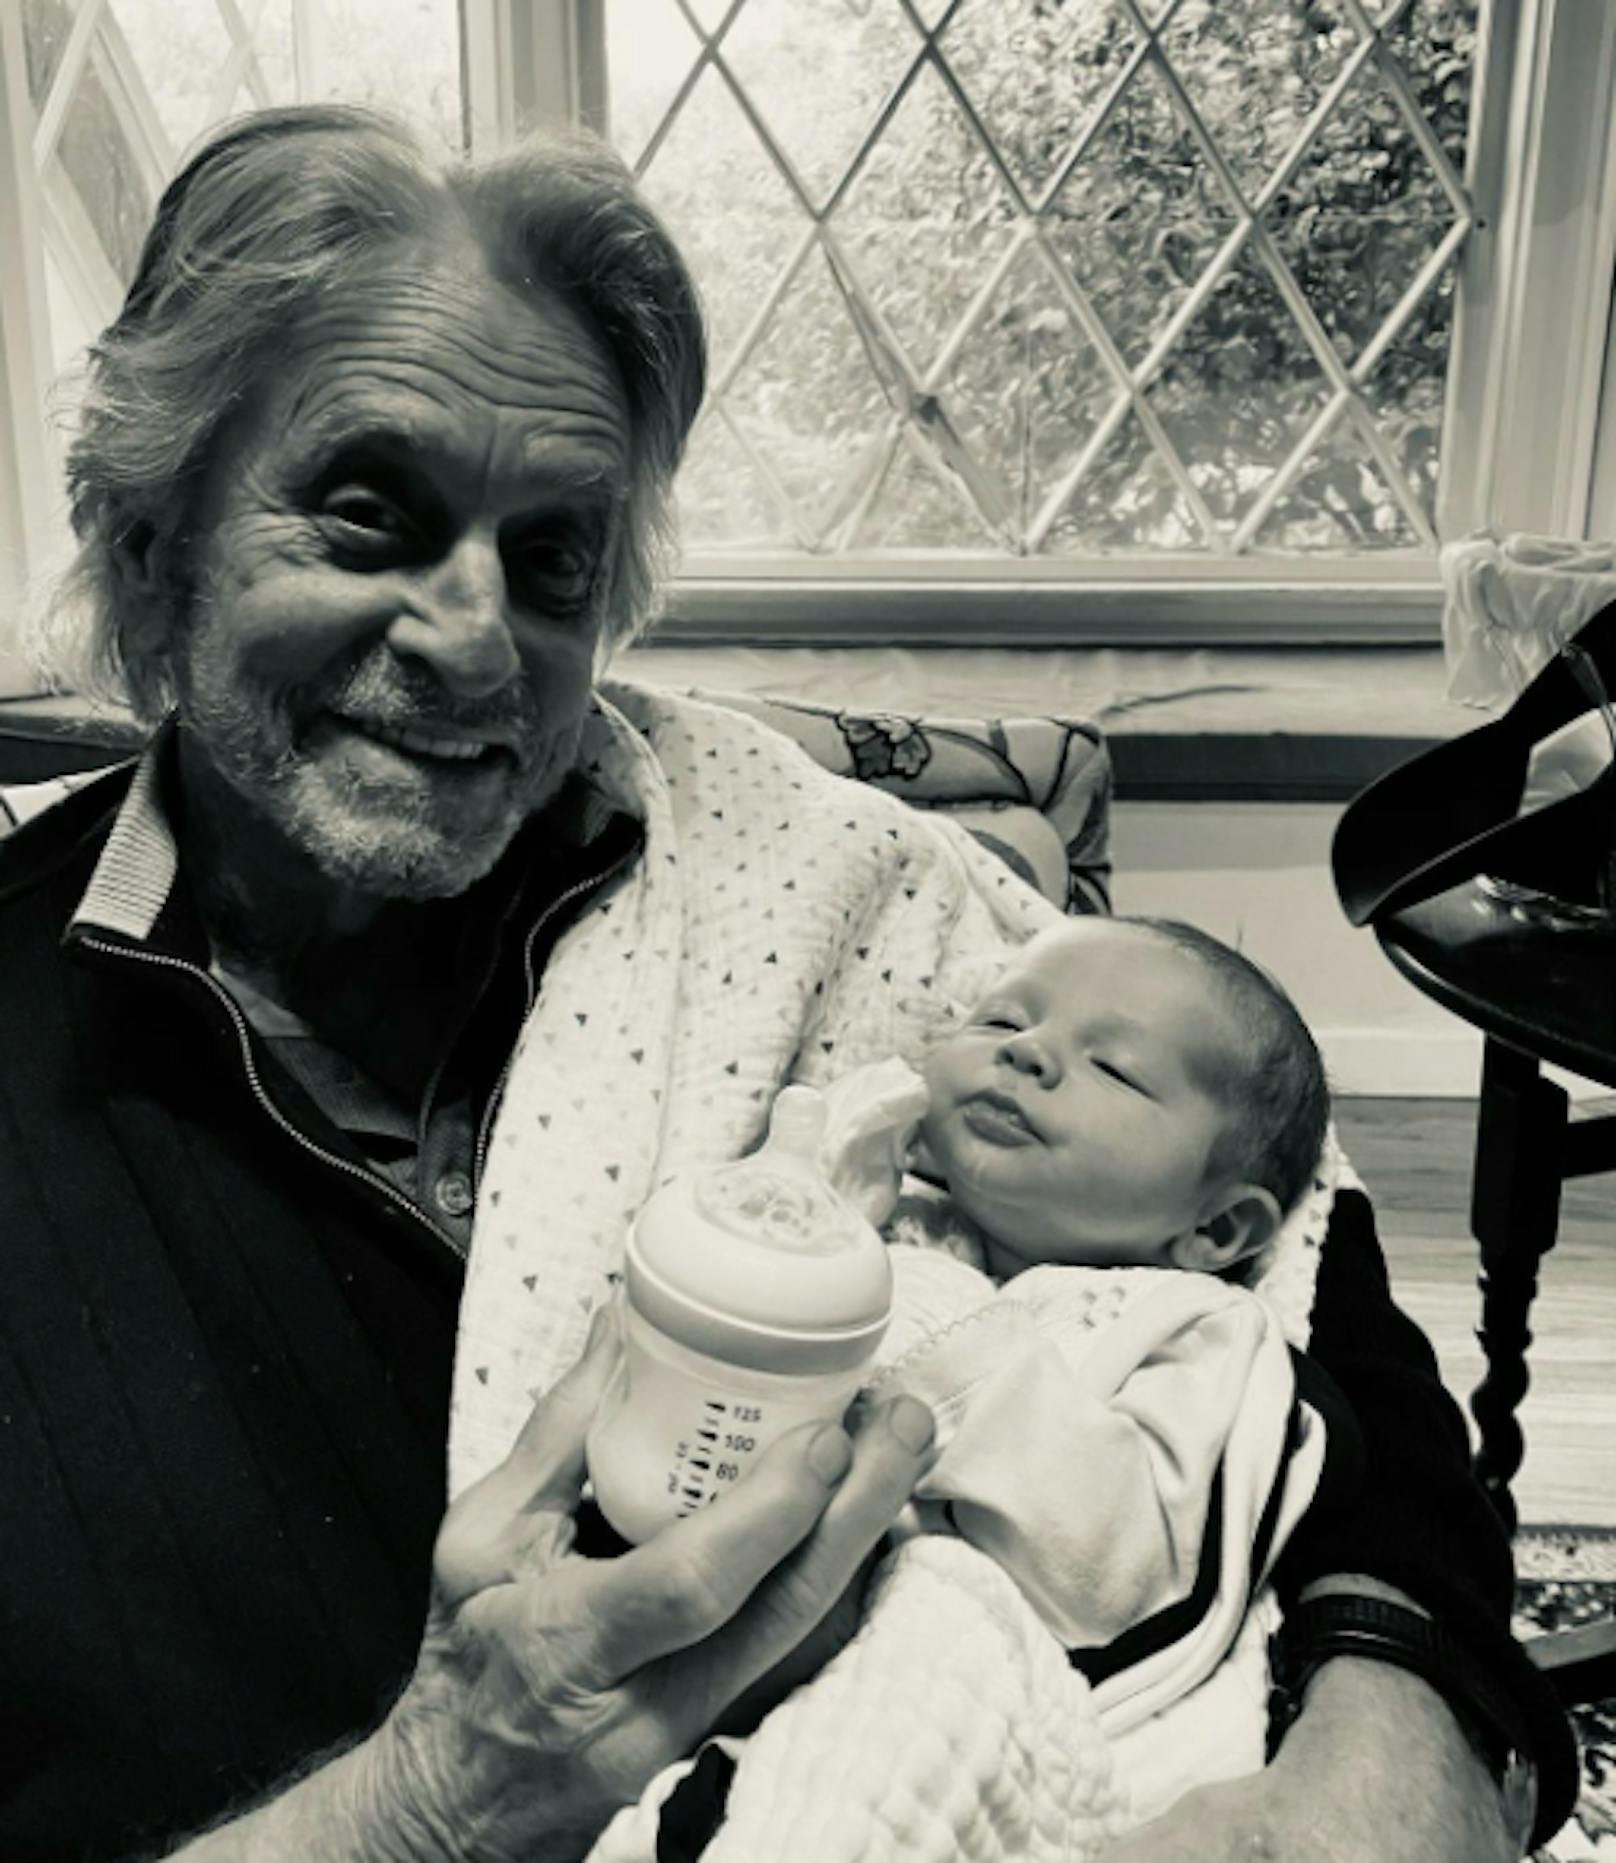 "Zum ersten Mal habe ich meinen einen Monat alten Enkel Ryder gesehen!", schrieb Michael Douglas zu diesem herzigen Foto.